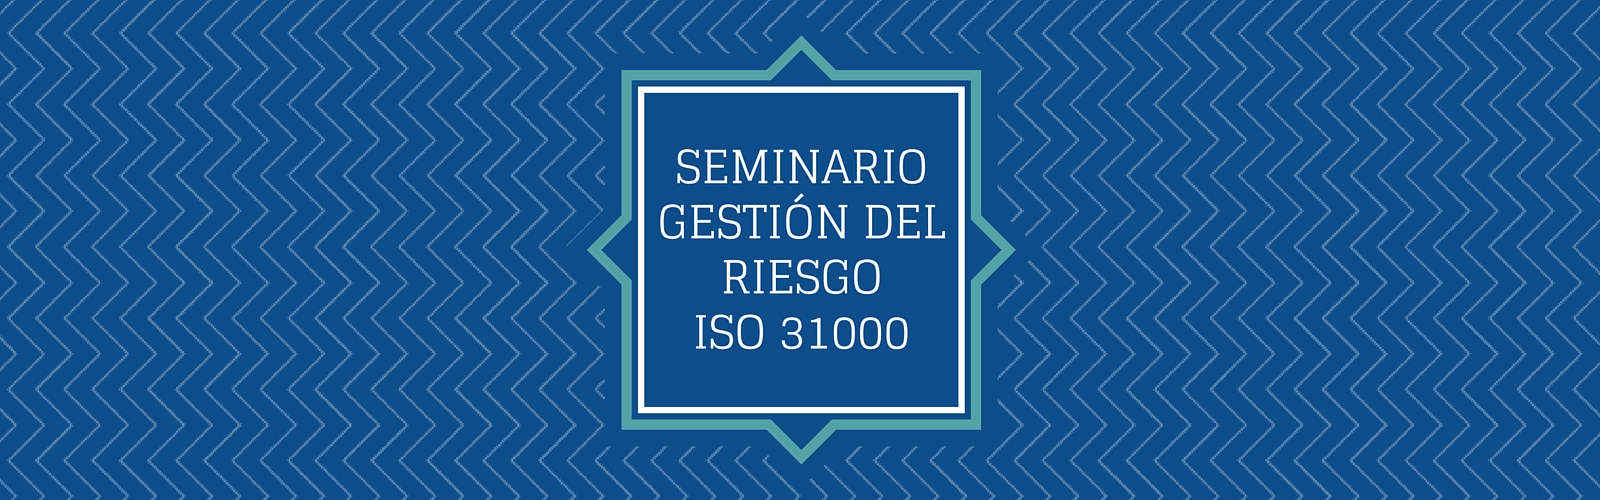 Seminario de Sensibilización: ISO 31000 Gestión del Riesgo